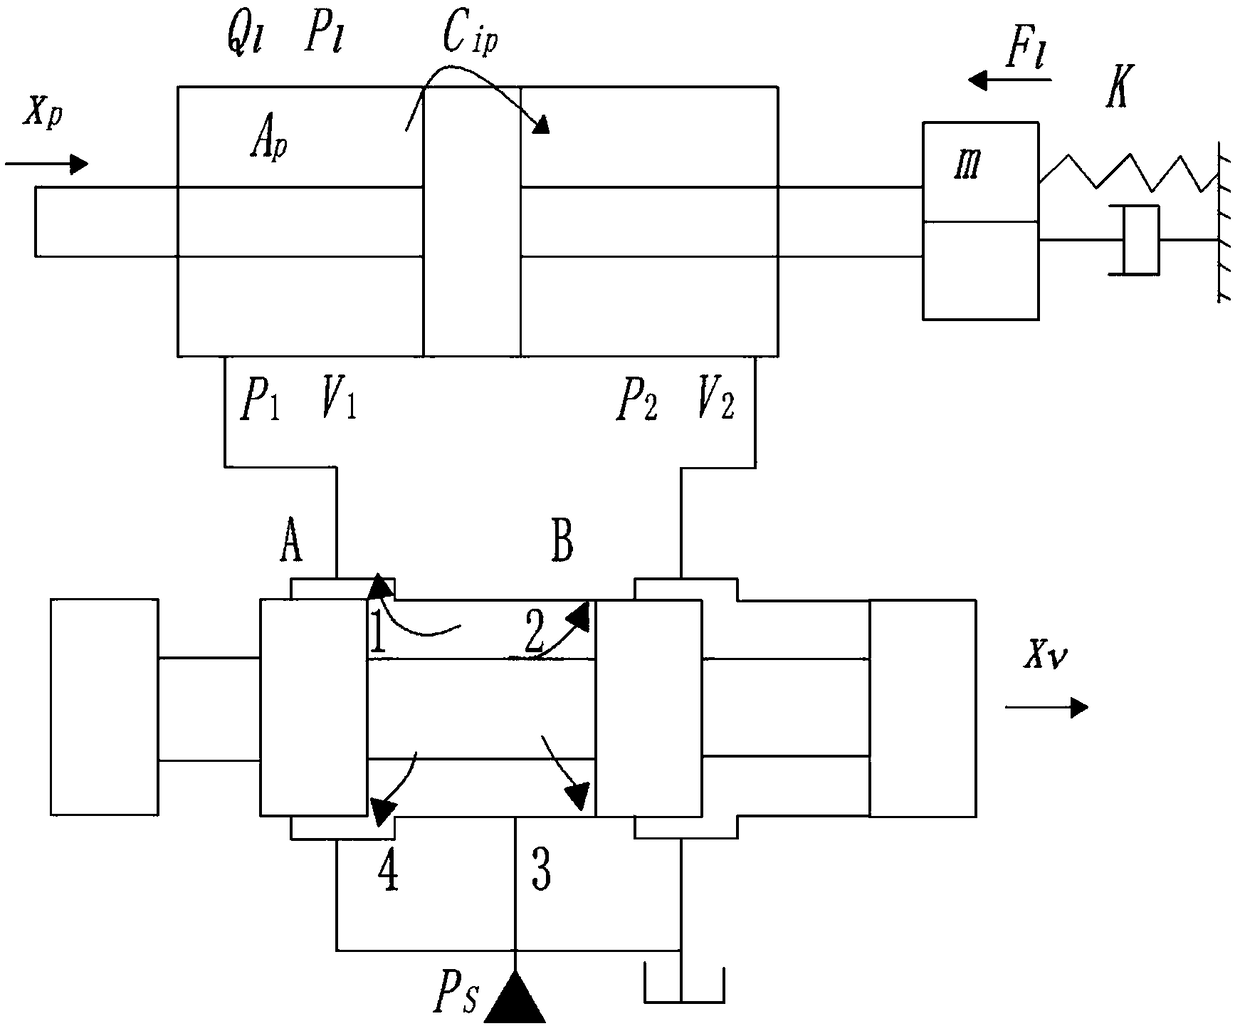 Symmetric control method for asymmetric hydraulic system based on output feedback